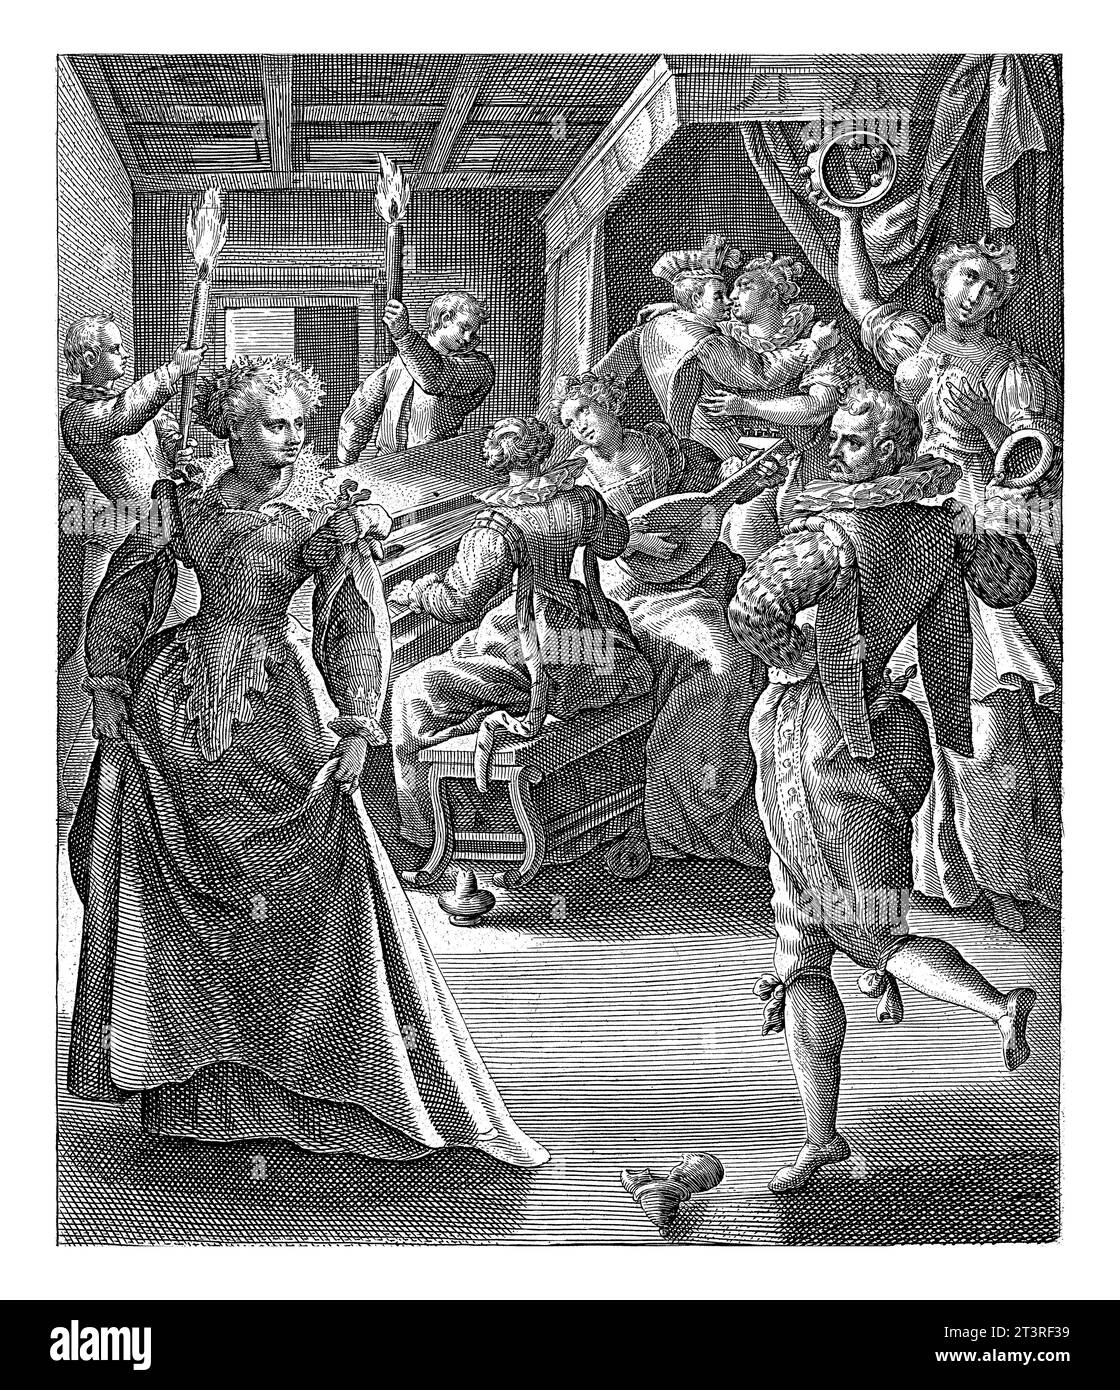 Les cinq vierges folles dansent et font de la musique, Crispijn van de passe (I), d'après Maerten de vos, 1589 - 1611 départ avec une élégante compagnie. Banque D'Images